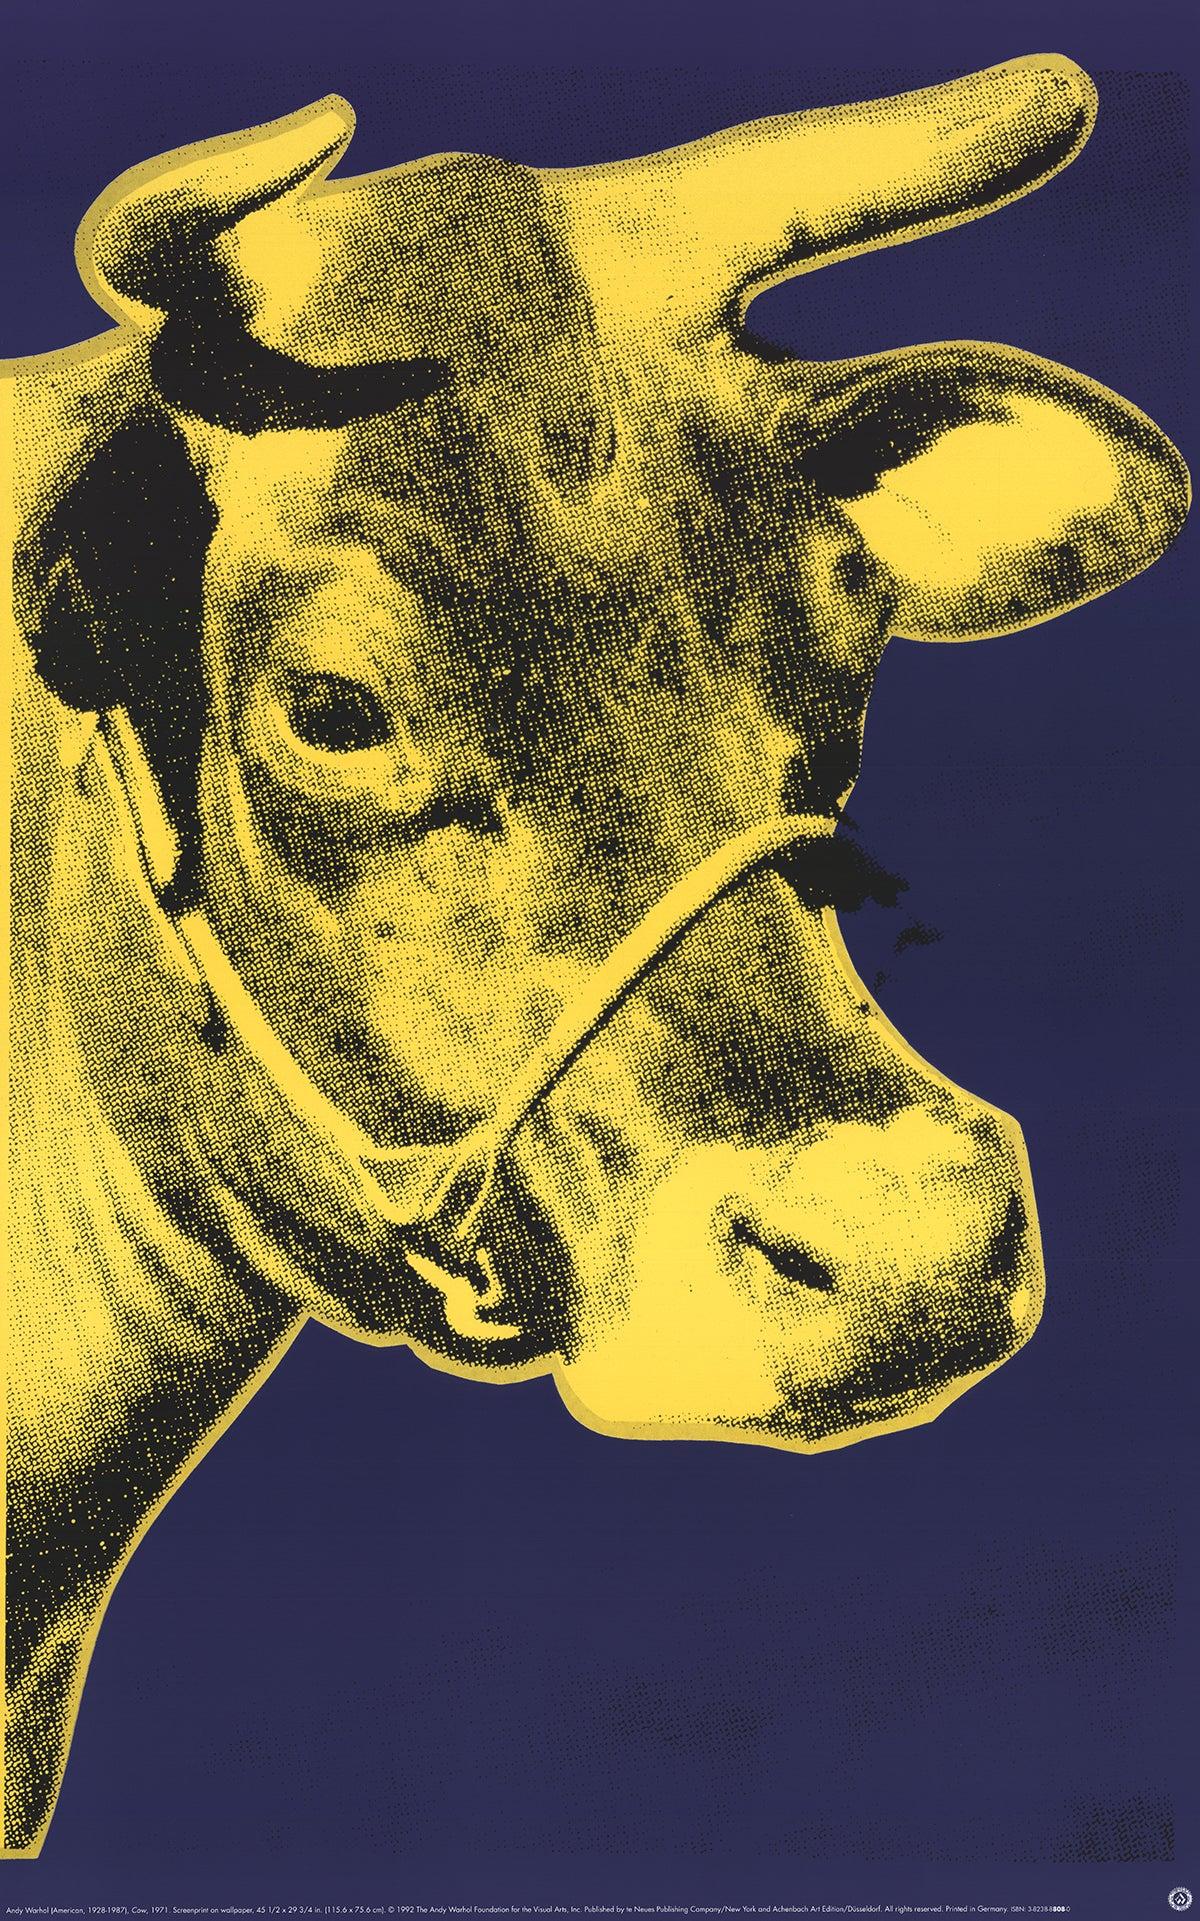 Papierformat: 33,5 x 20,25 Zoll (85,09 x 51,435 cm)
Bildgröße: 33,5 x 20,25 Zoll (85,09 x 51,435 cm)
Gerahmt: Nein
Zustand: A: Neuwertig

Zusätzliche Details: Kuhgelb auf Blau von Andy Warhol, gedruckt im Jahr 2000, veröffentlicht von Te neues